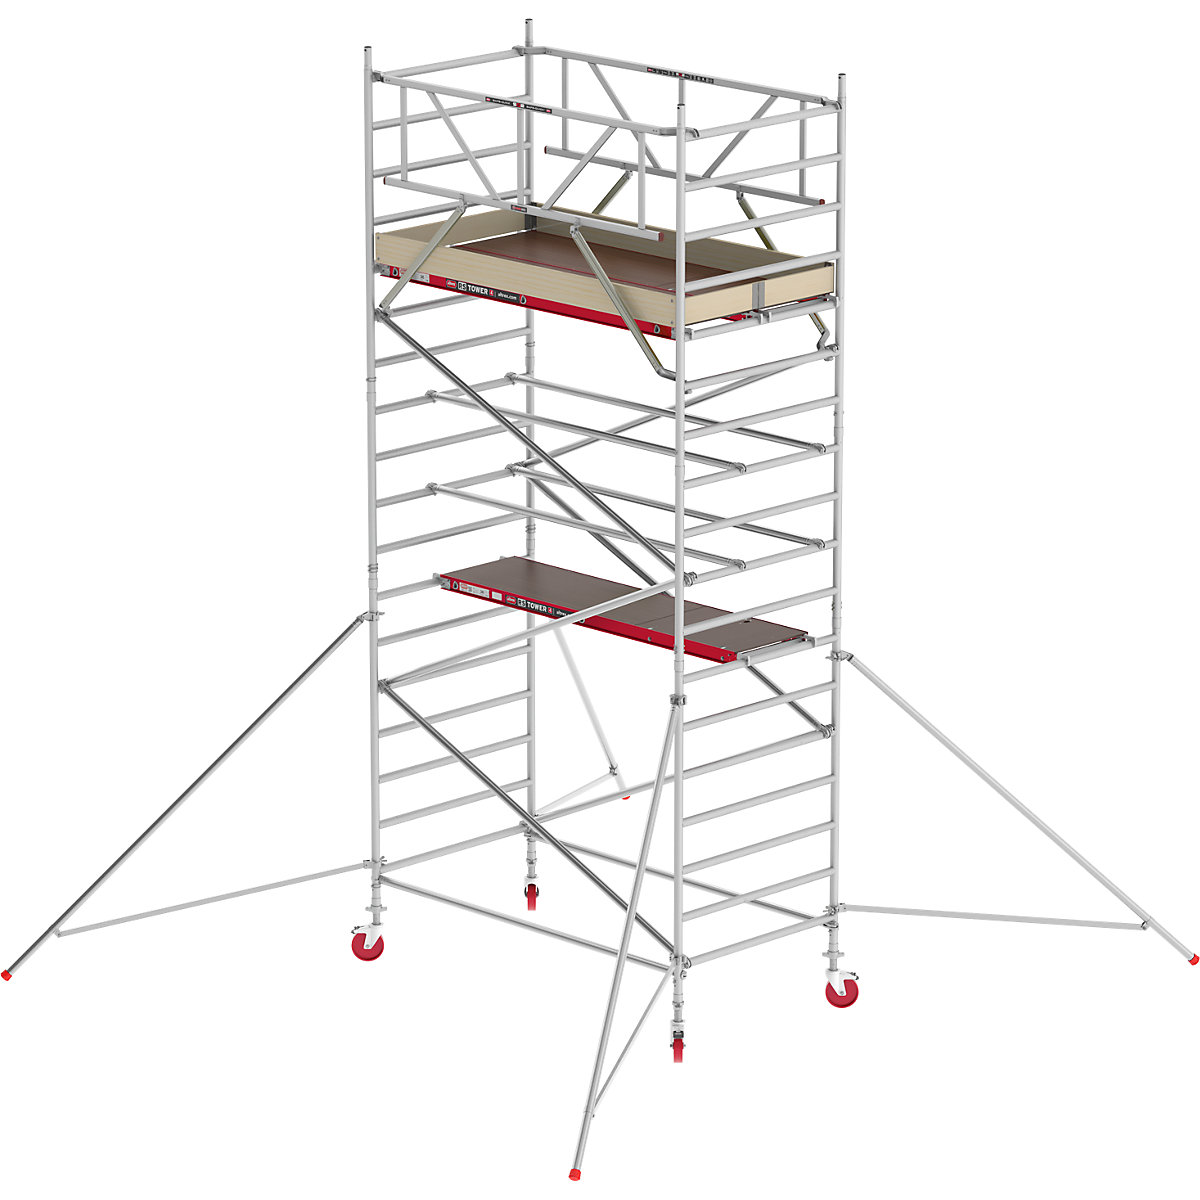 Schelă mobilă RS TOWER 42 lată – Altrex, platformă din lemn, lungime 2,45 m, înălțime de lucru 6,20 m-2